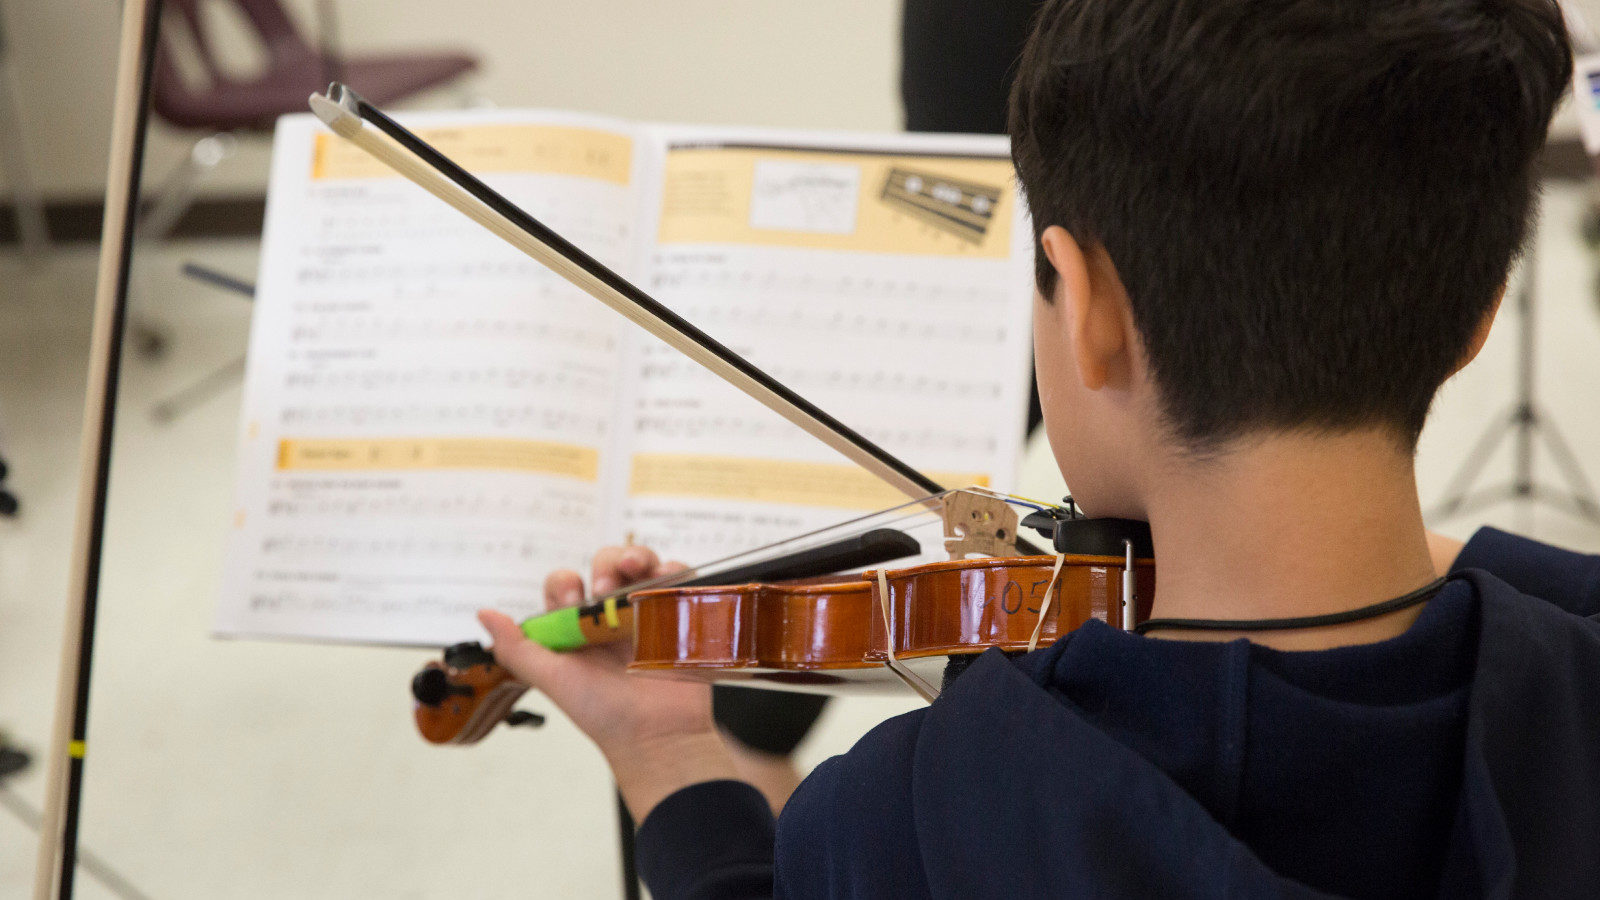 Boy plays violin while looking at sheet music